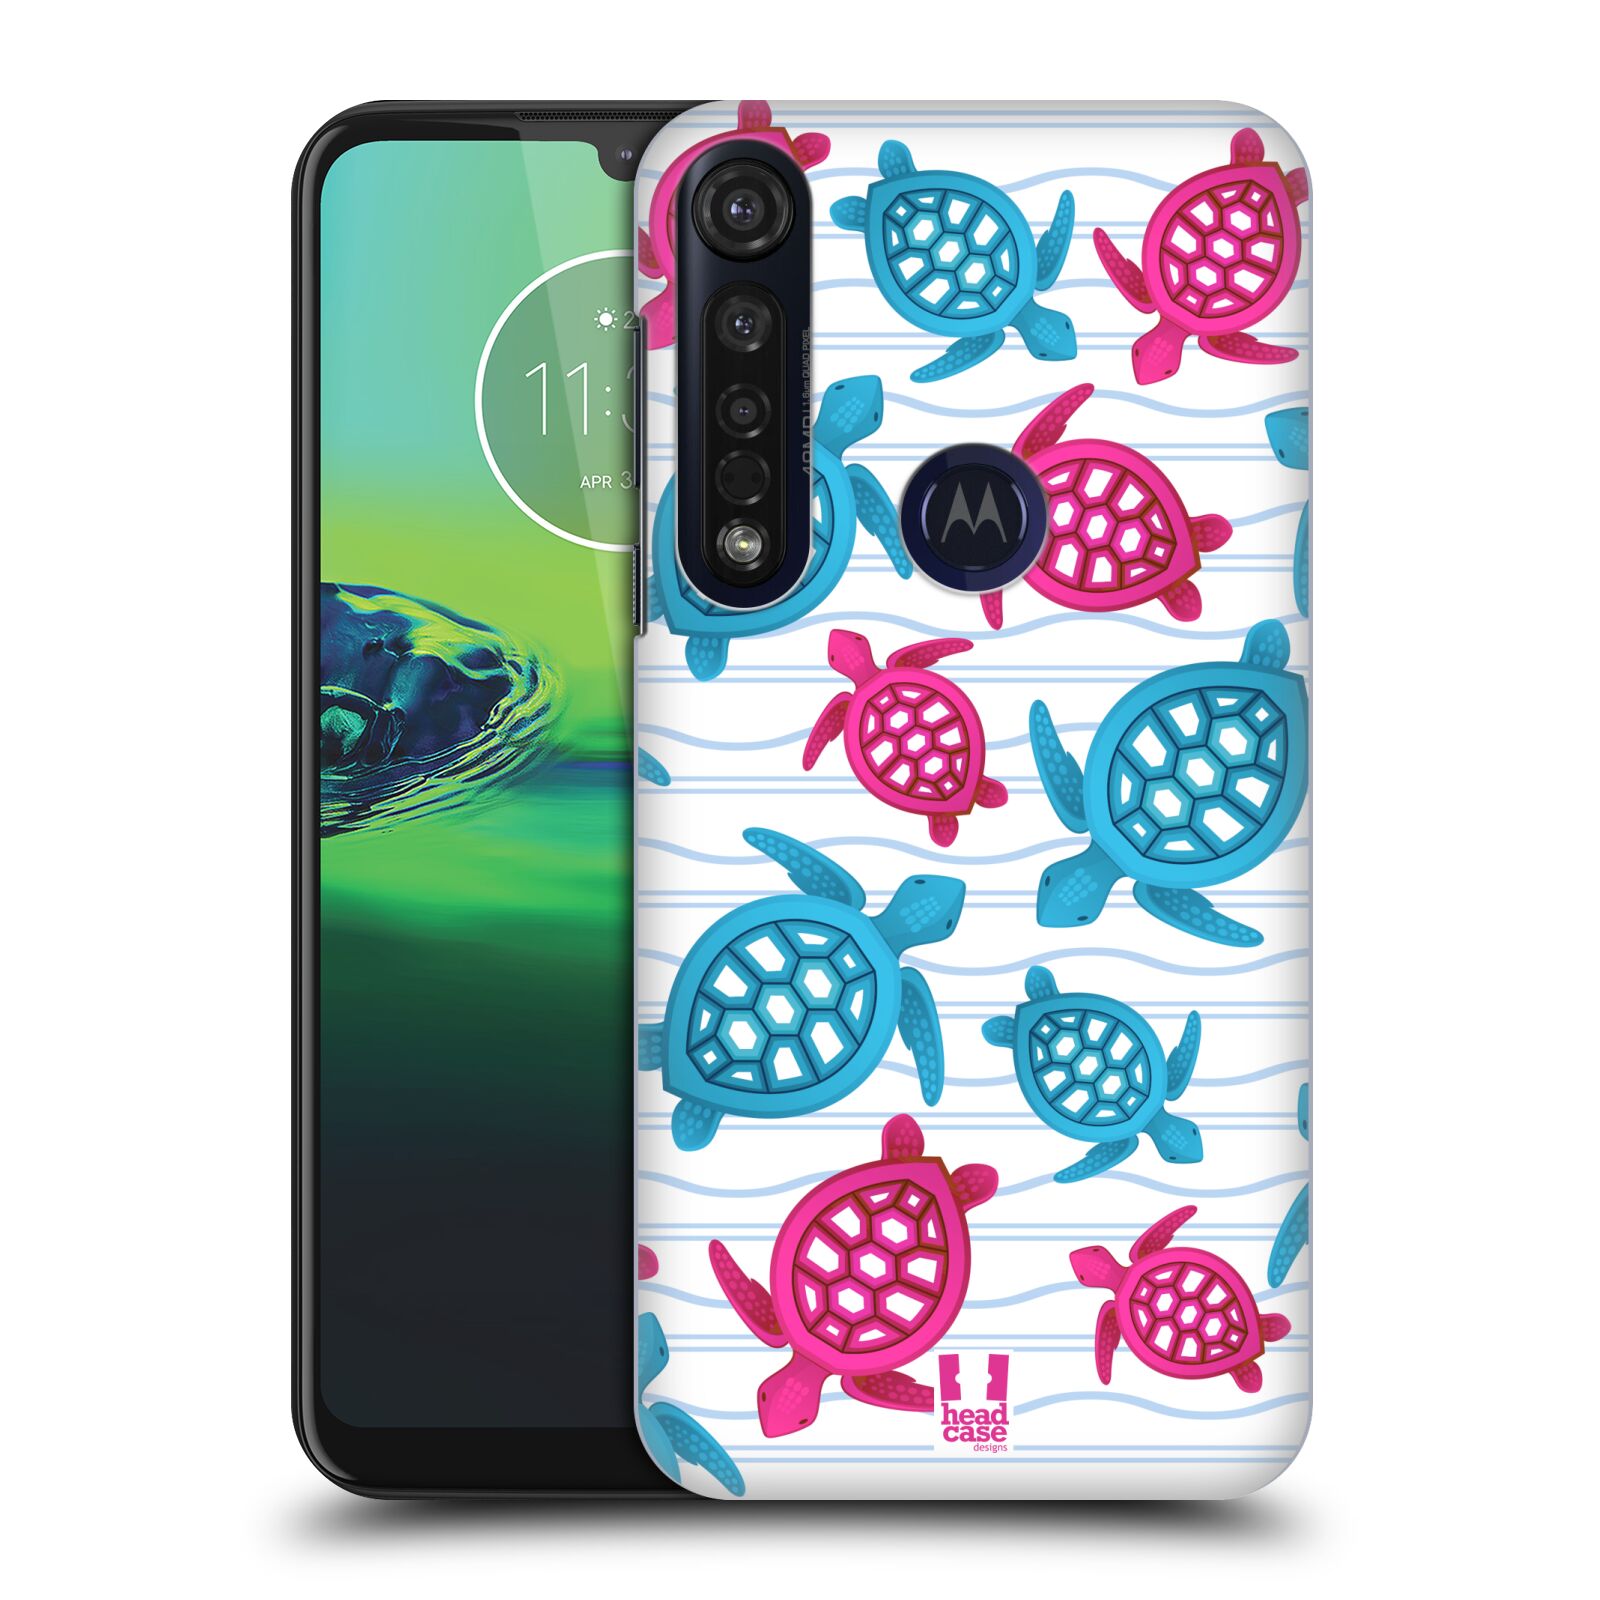 Pouzdro na mobil Motorola Moto G8 PLUS - HEAD CASE - vzor mořský živočich želva modrá a růžová